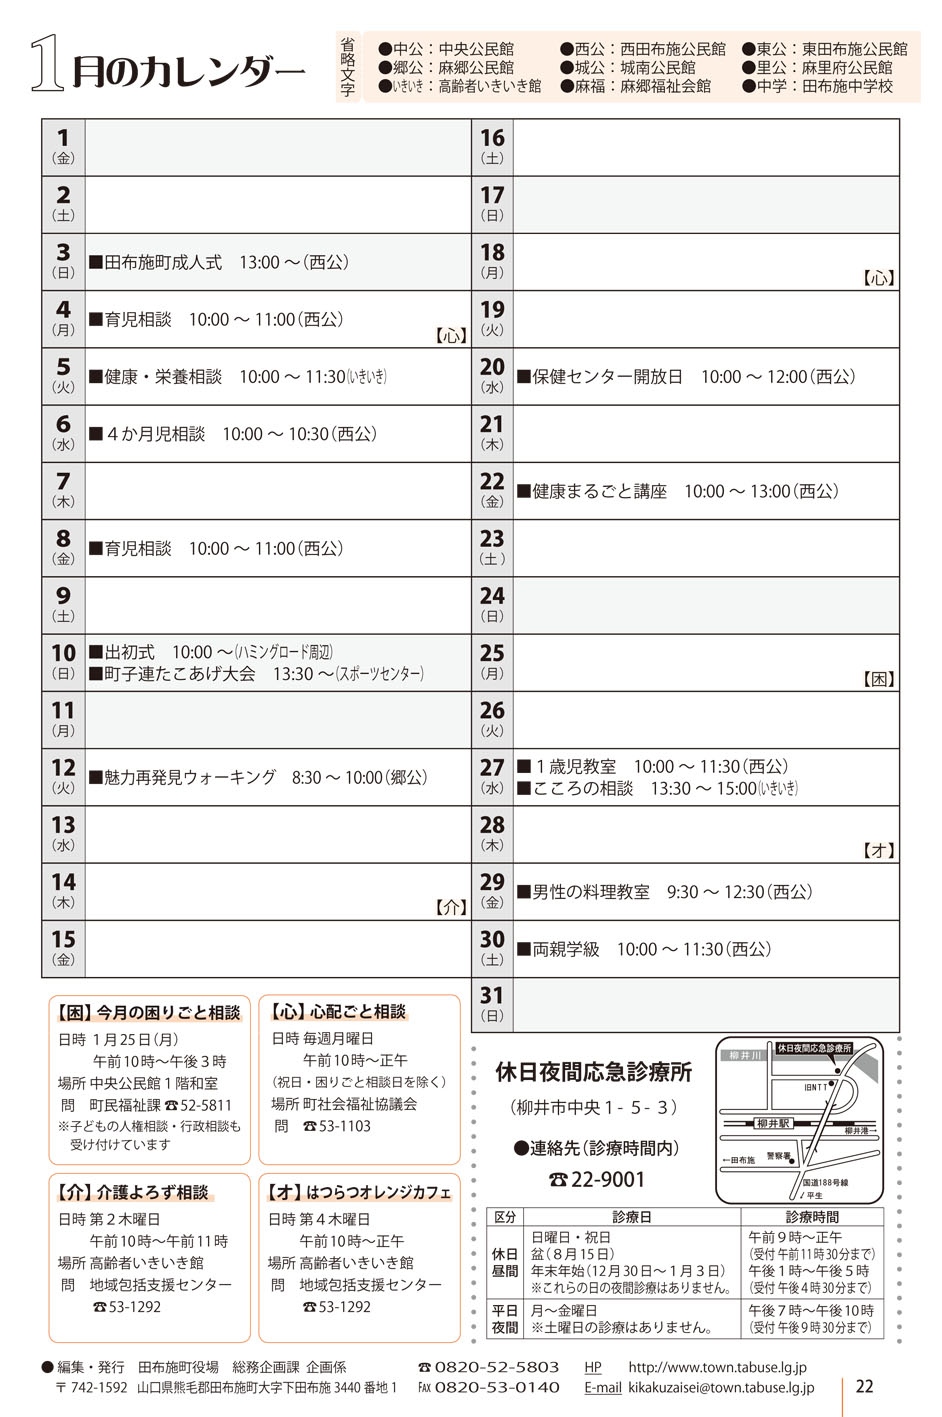 行事カレンダー 16年1月 田布施町